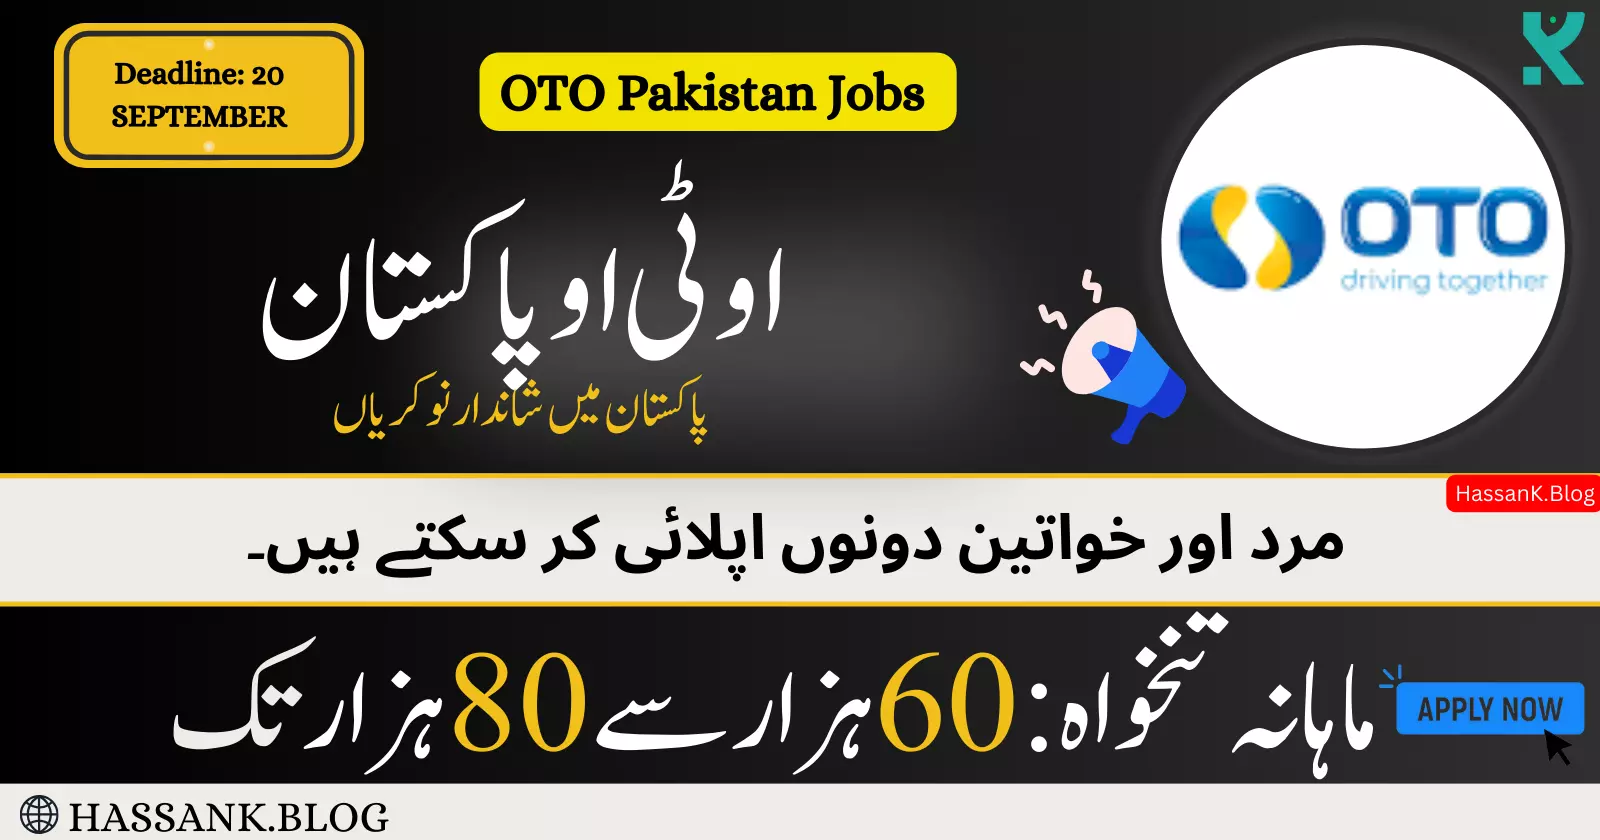 OTO Pakistan